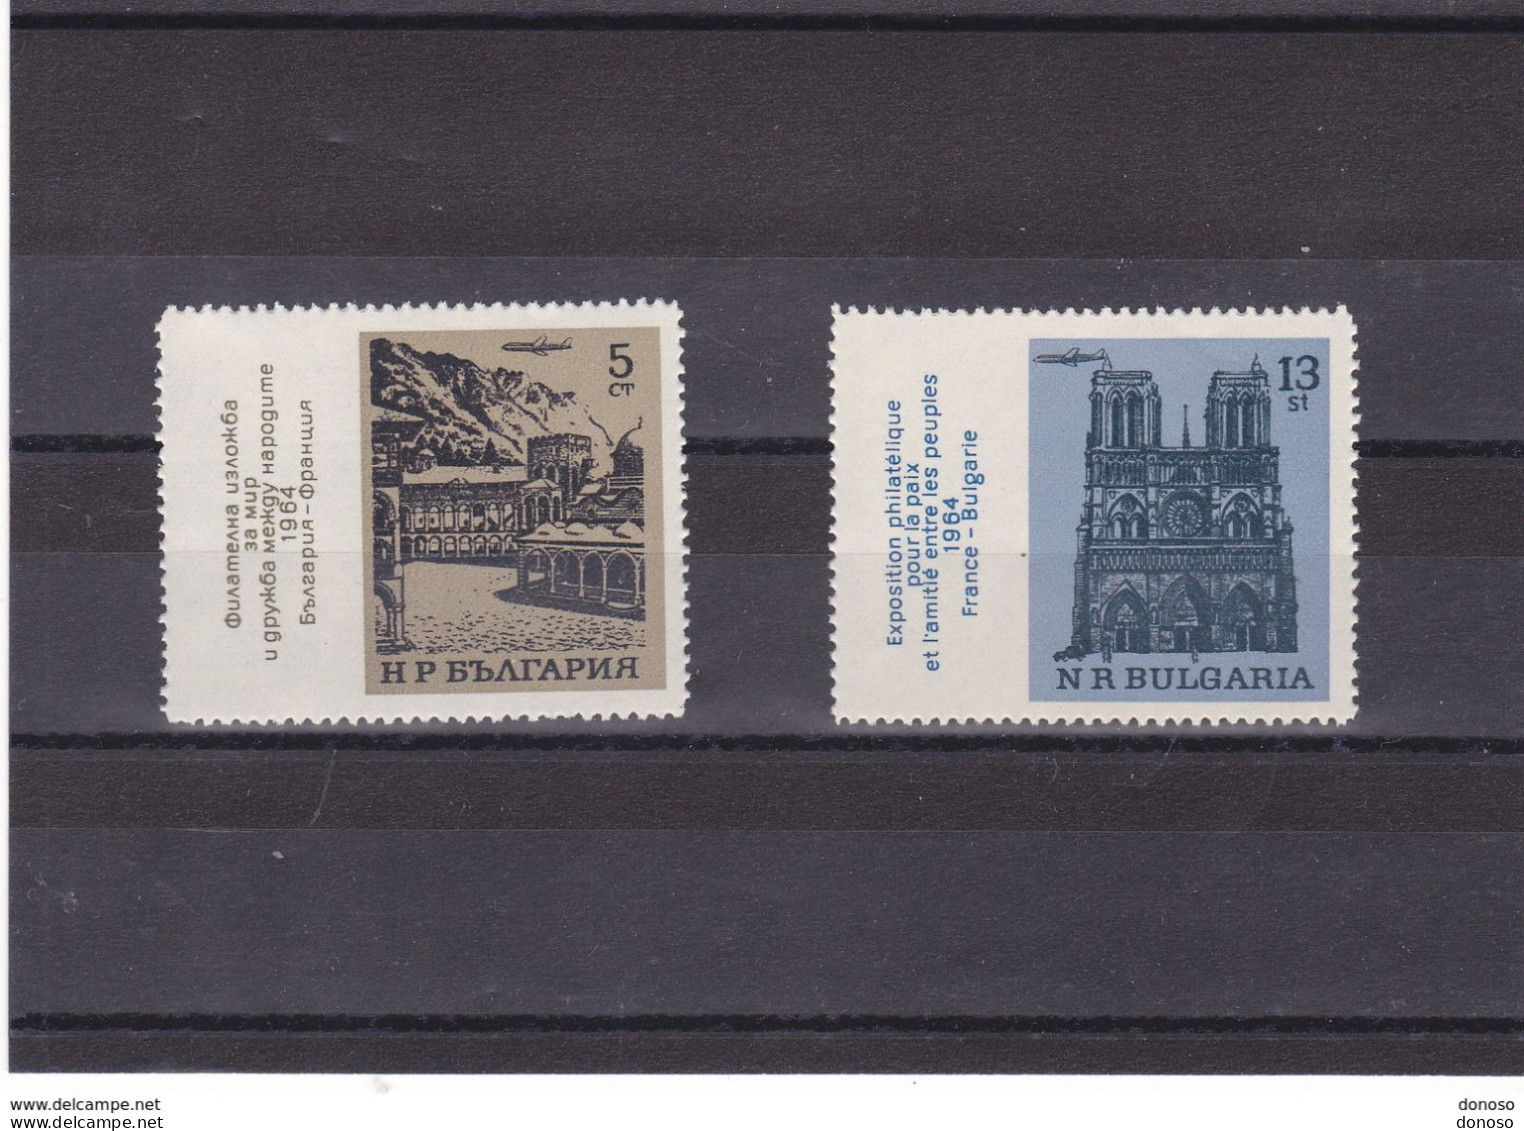 BULGARIE 1964 Monastère De Rila, Notre Dame De Paris Yvert 1293-1294, Michel 1500-1501 NEUF** MNH - Unused Stamps